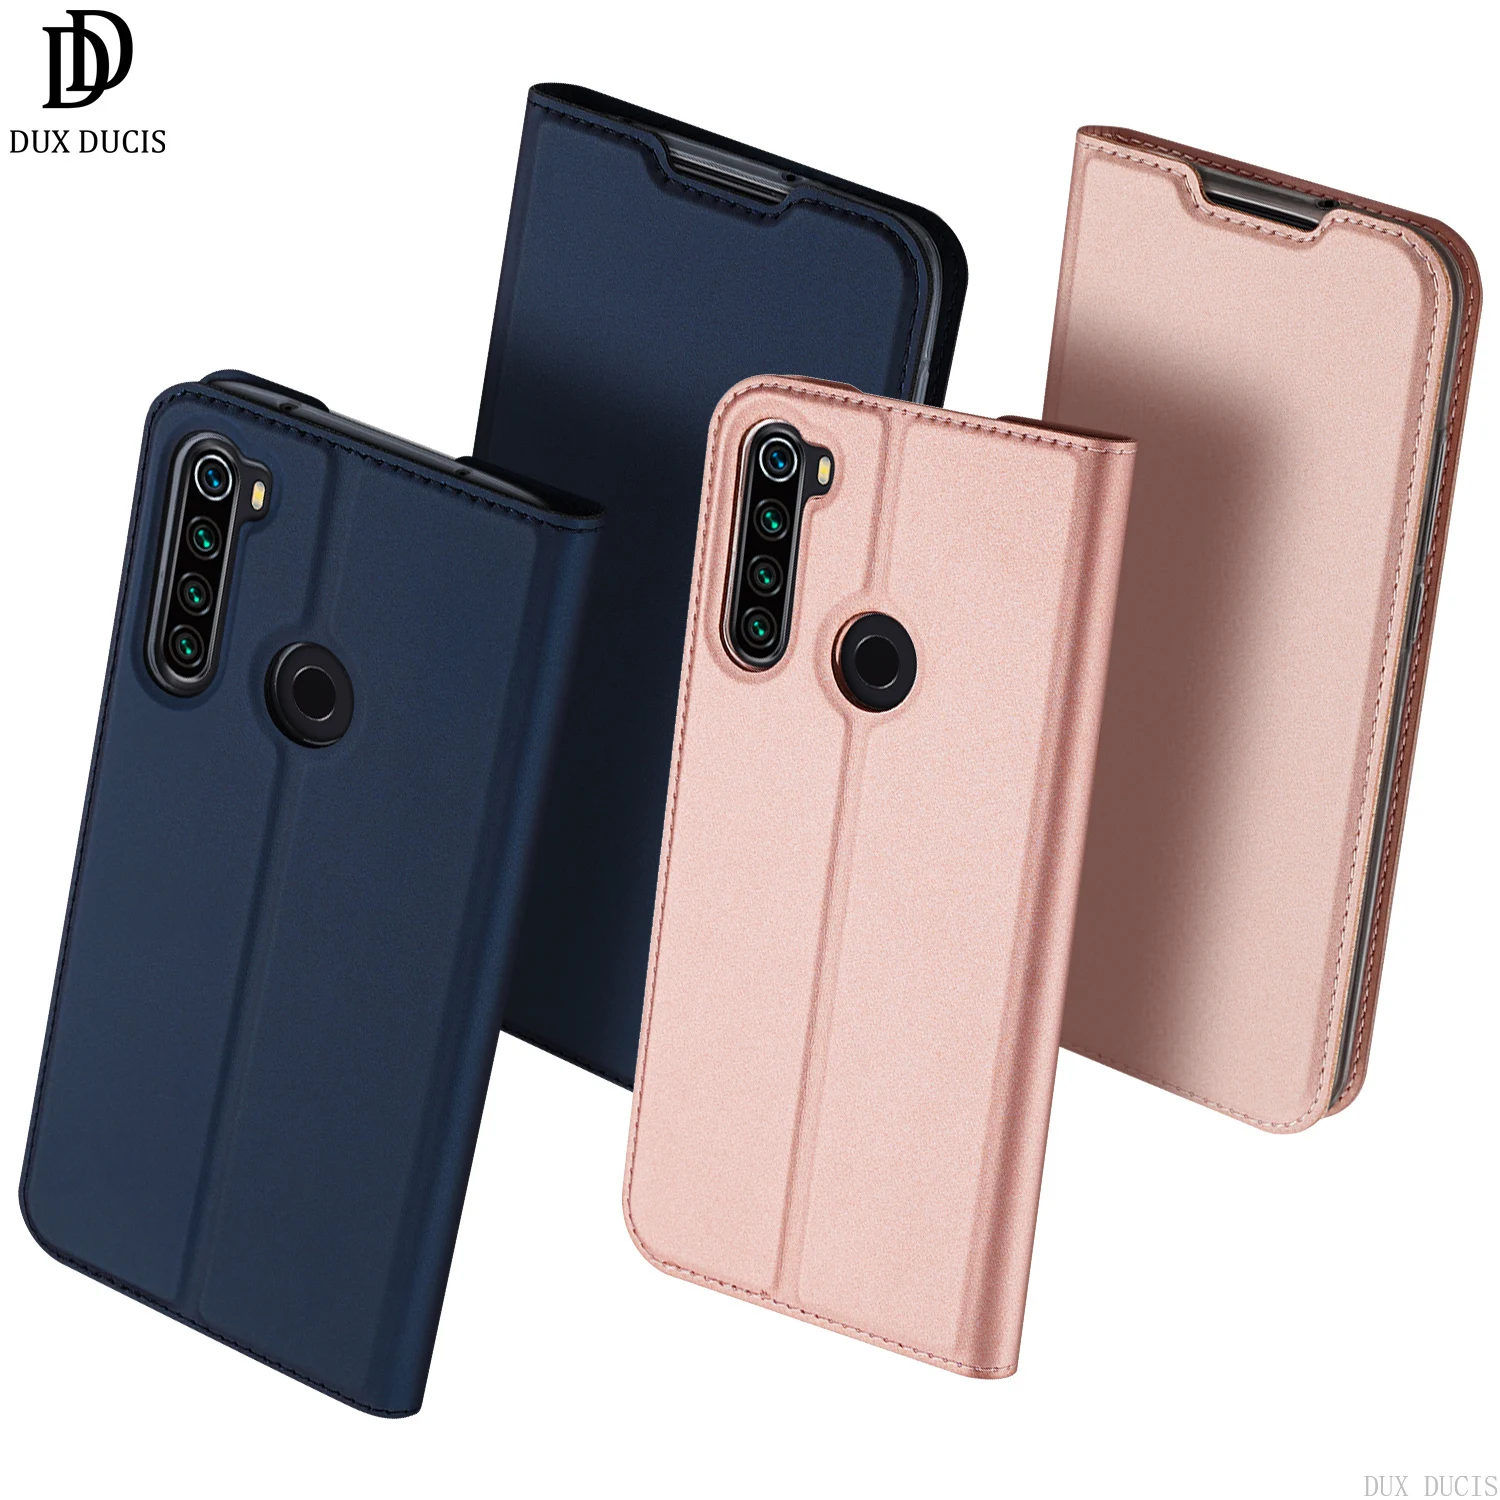 

Dux Ducis Flip Case For Xiaomi Mi Redmi Note 8T Card Pocket Wallet Cover Soft Bumper Dirt-resistant Anti-knock Kickstand Case